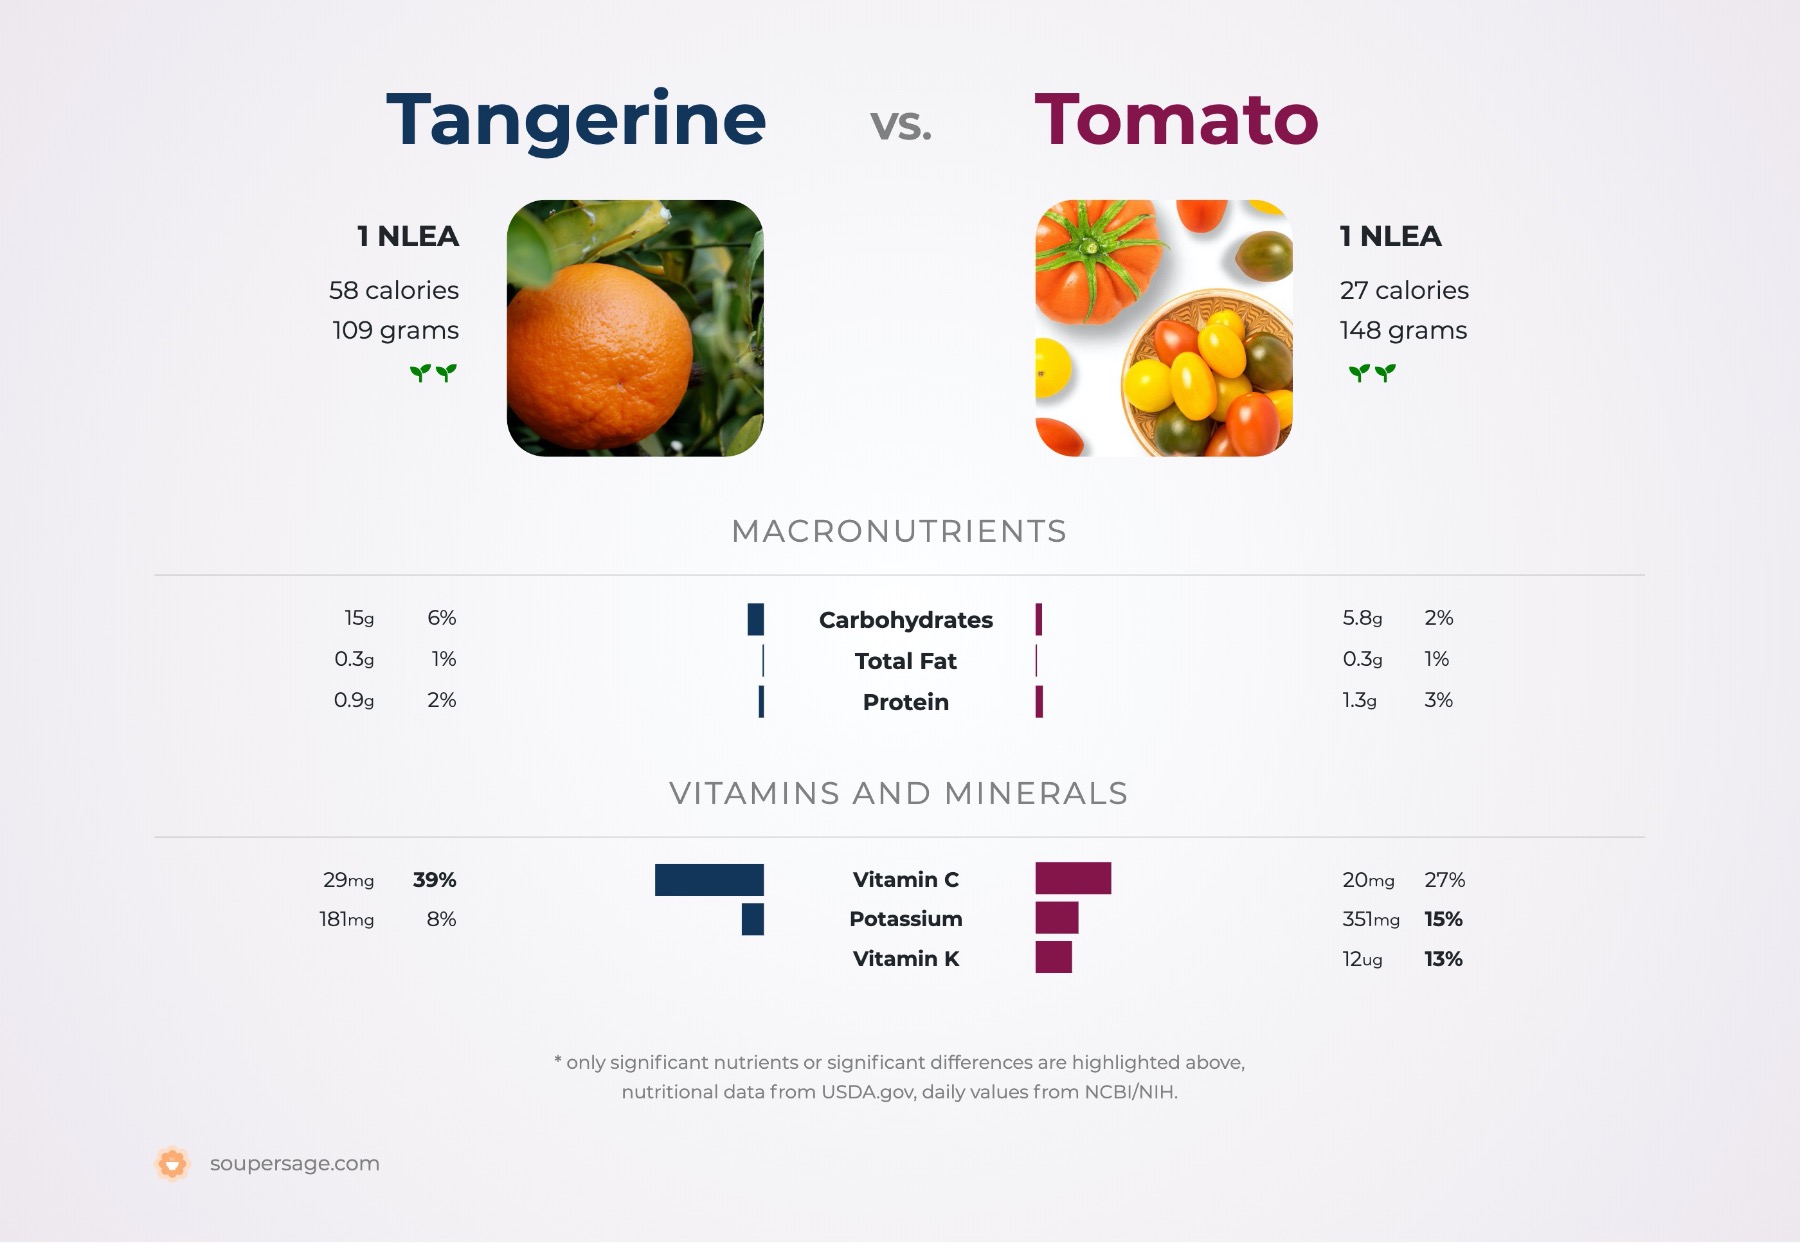 nutrition comparison of tangerine vs. tomato